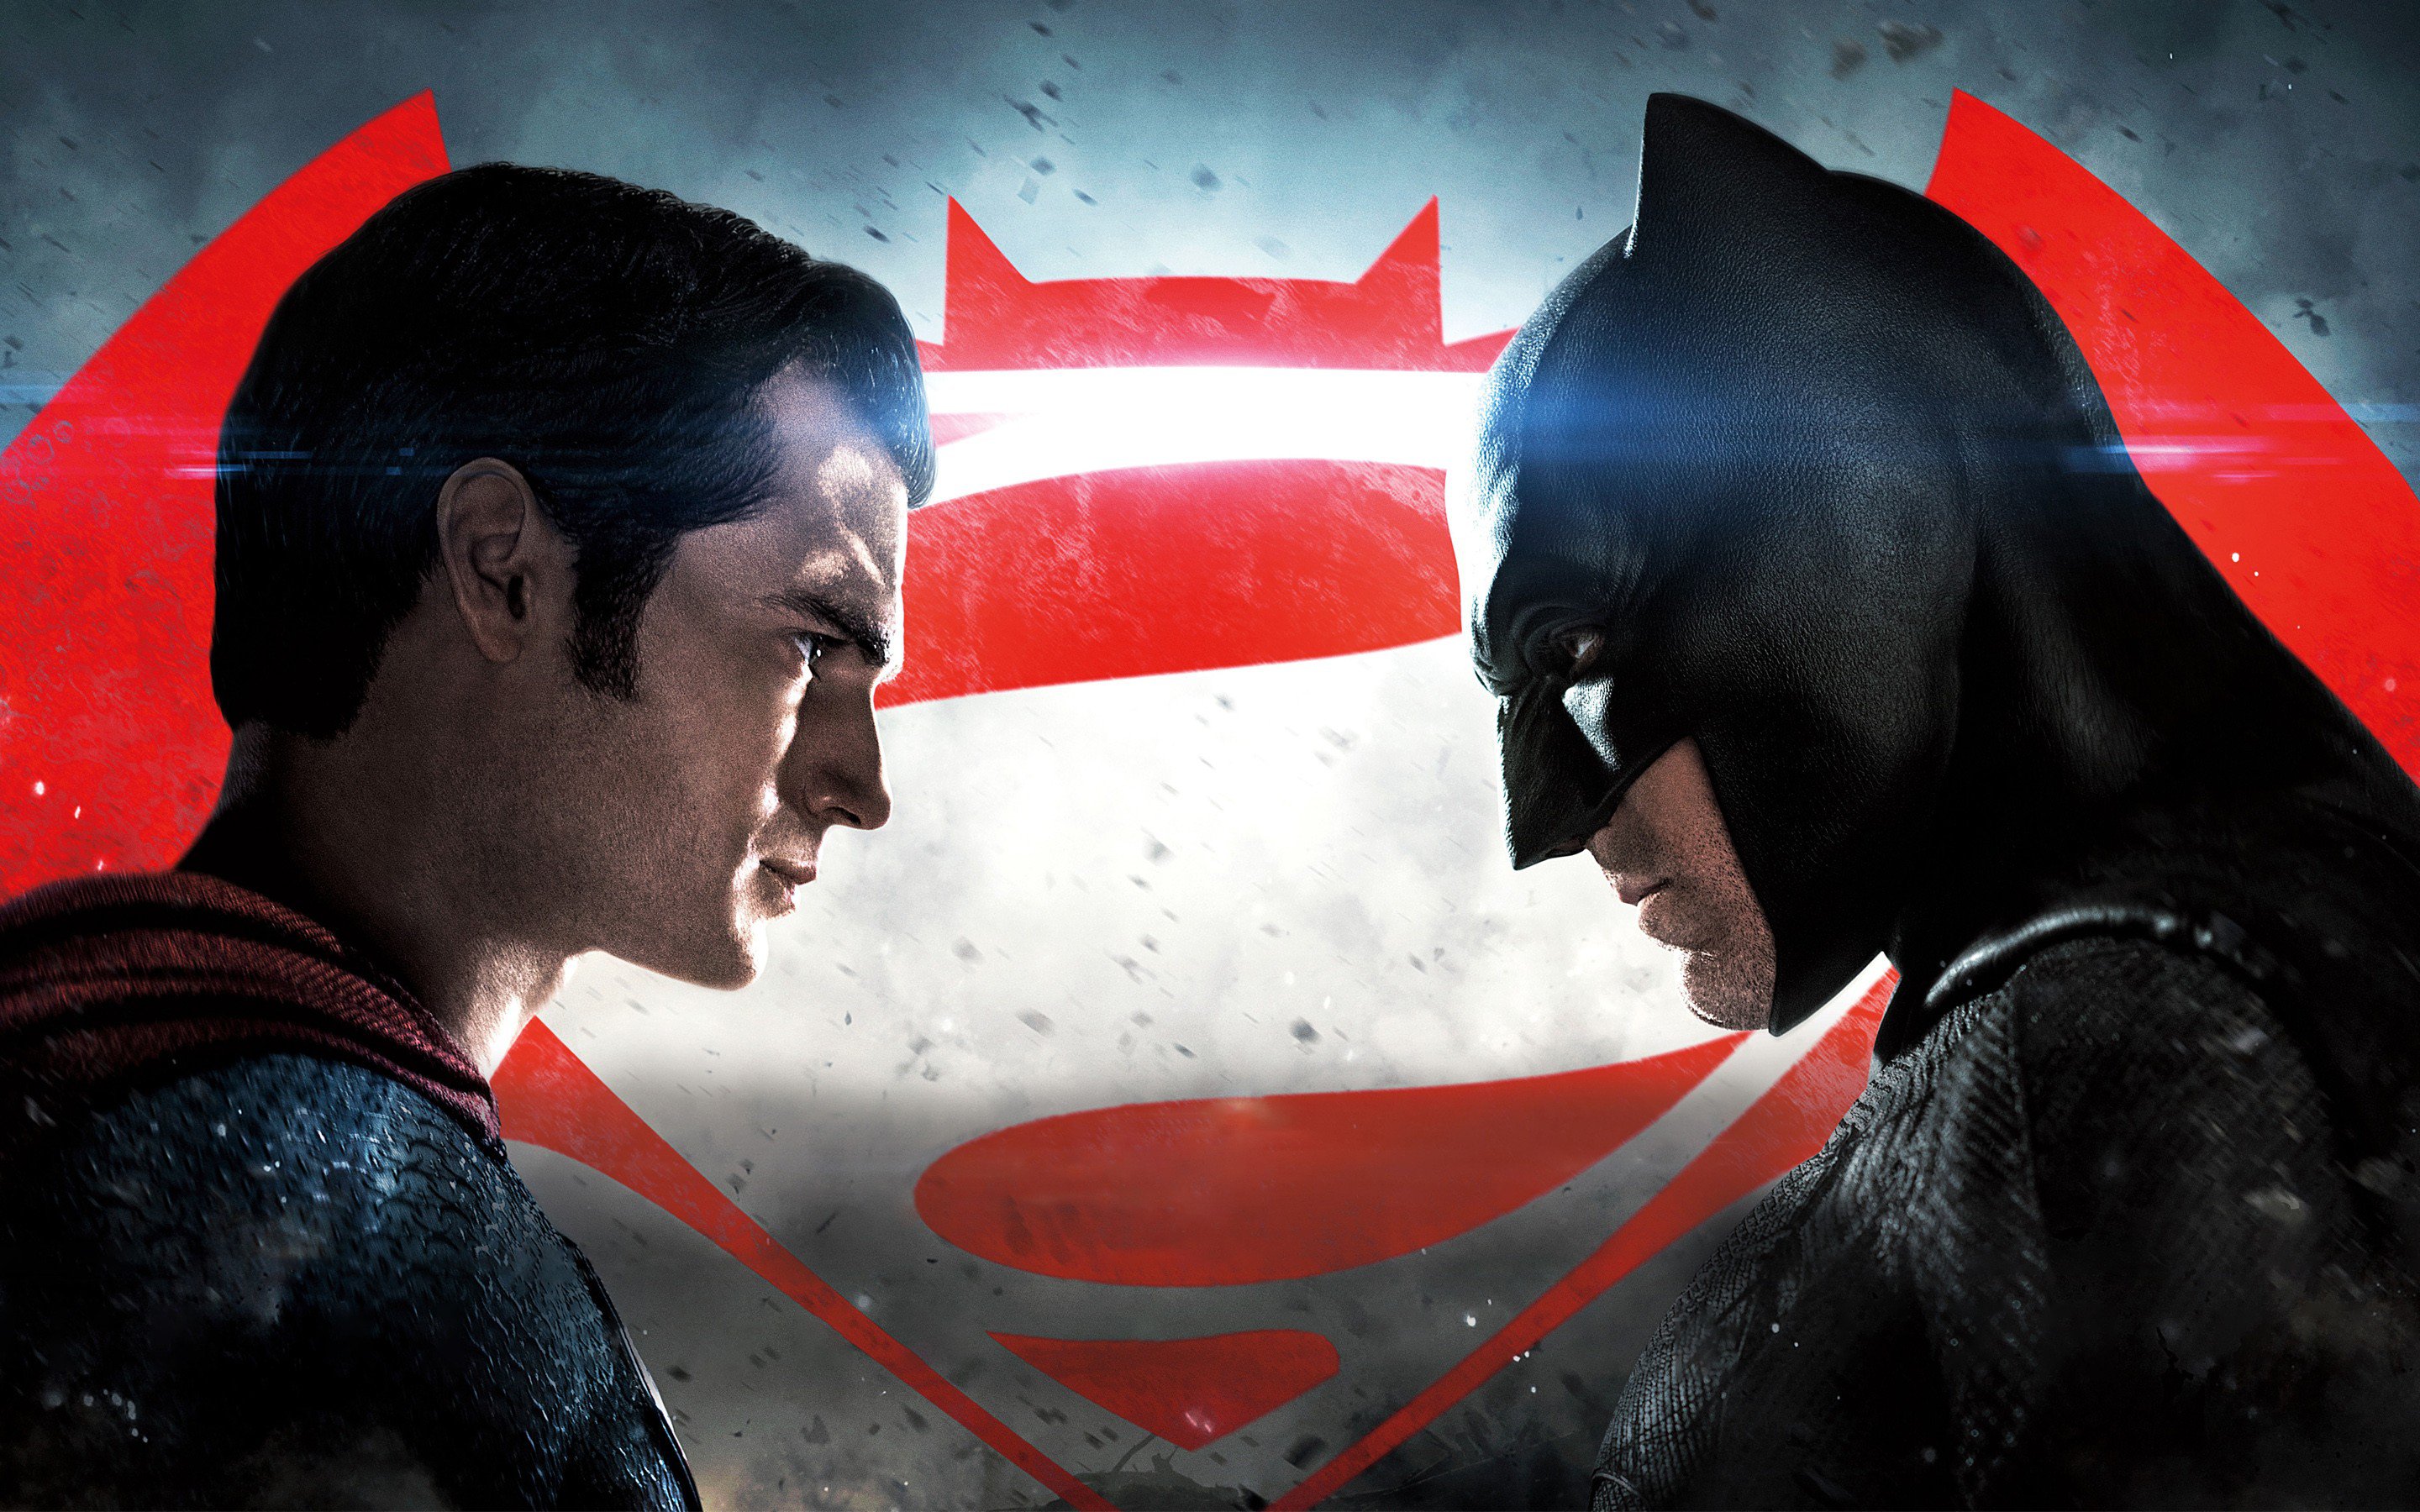 Batman Vs Superman Pic Hd - HD Wallpaper 